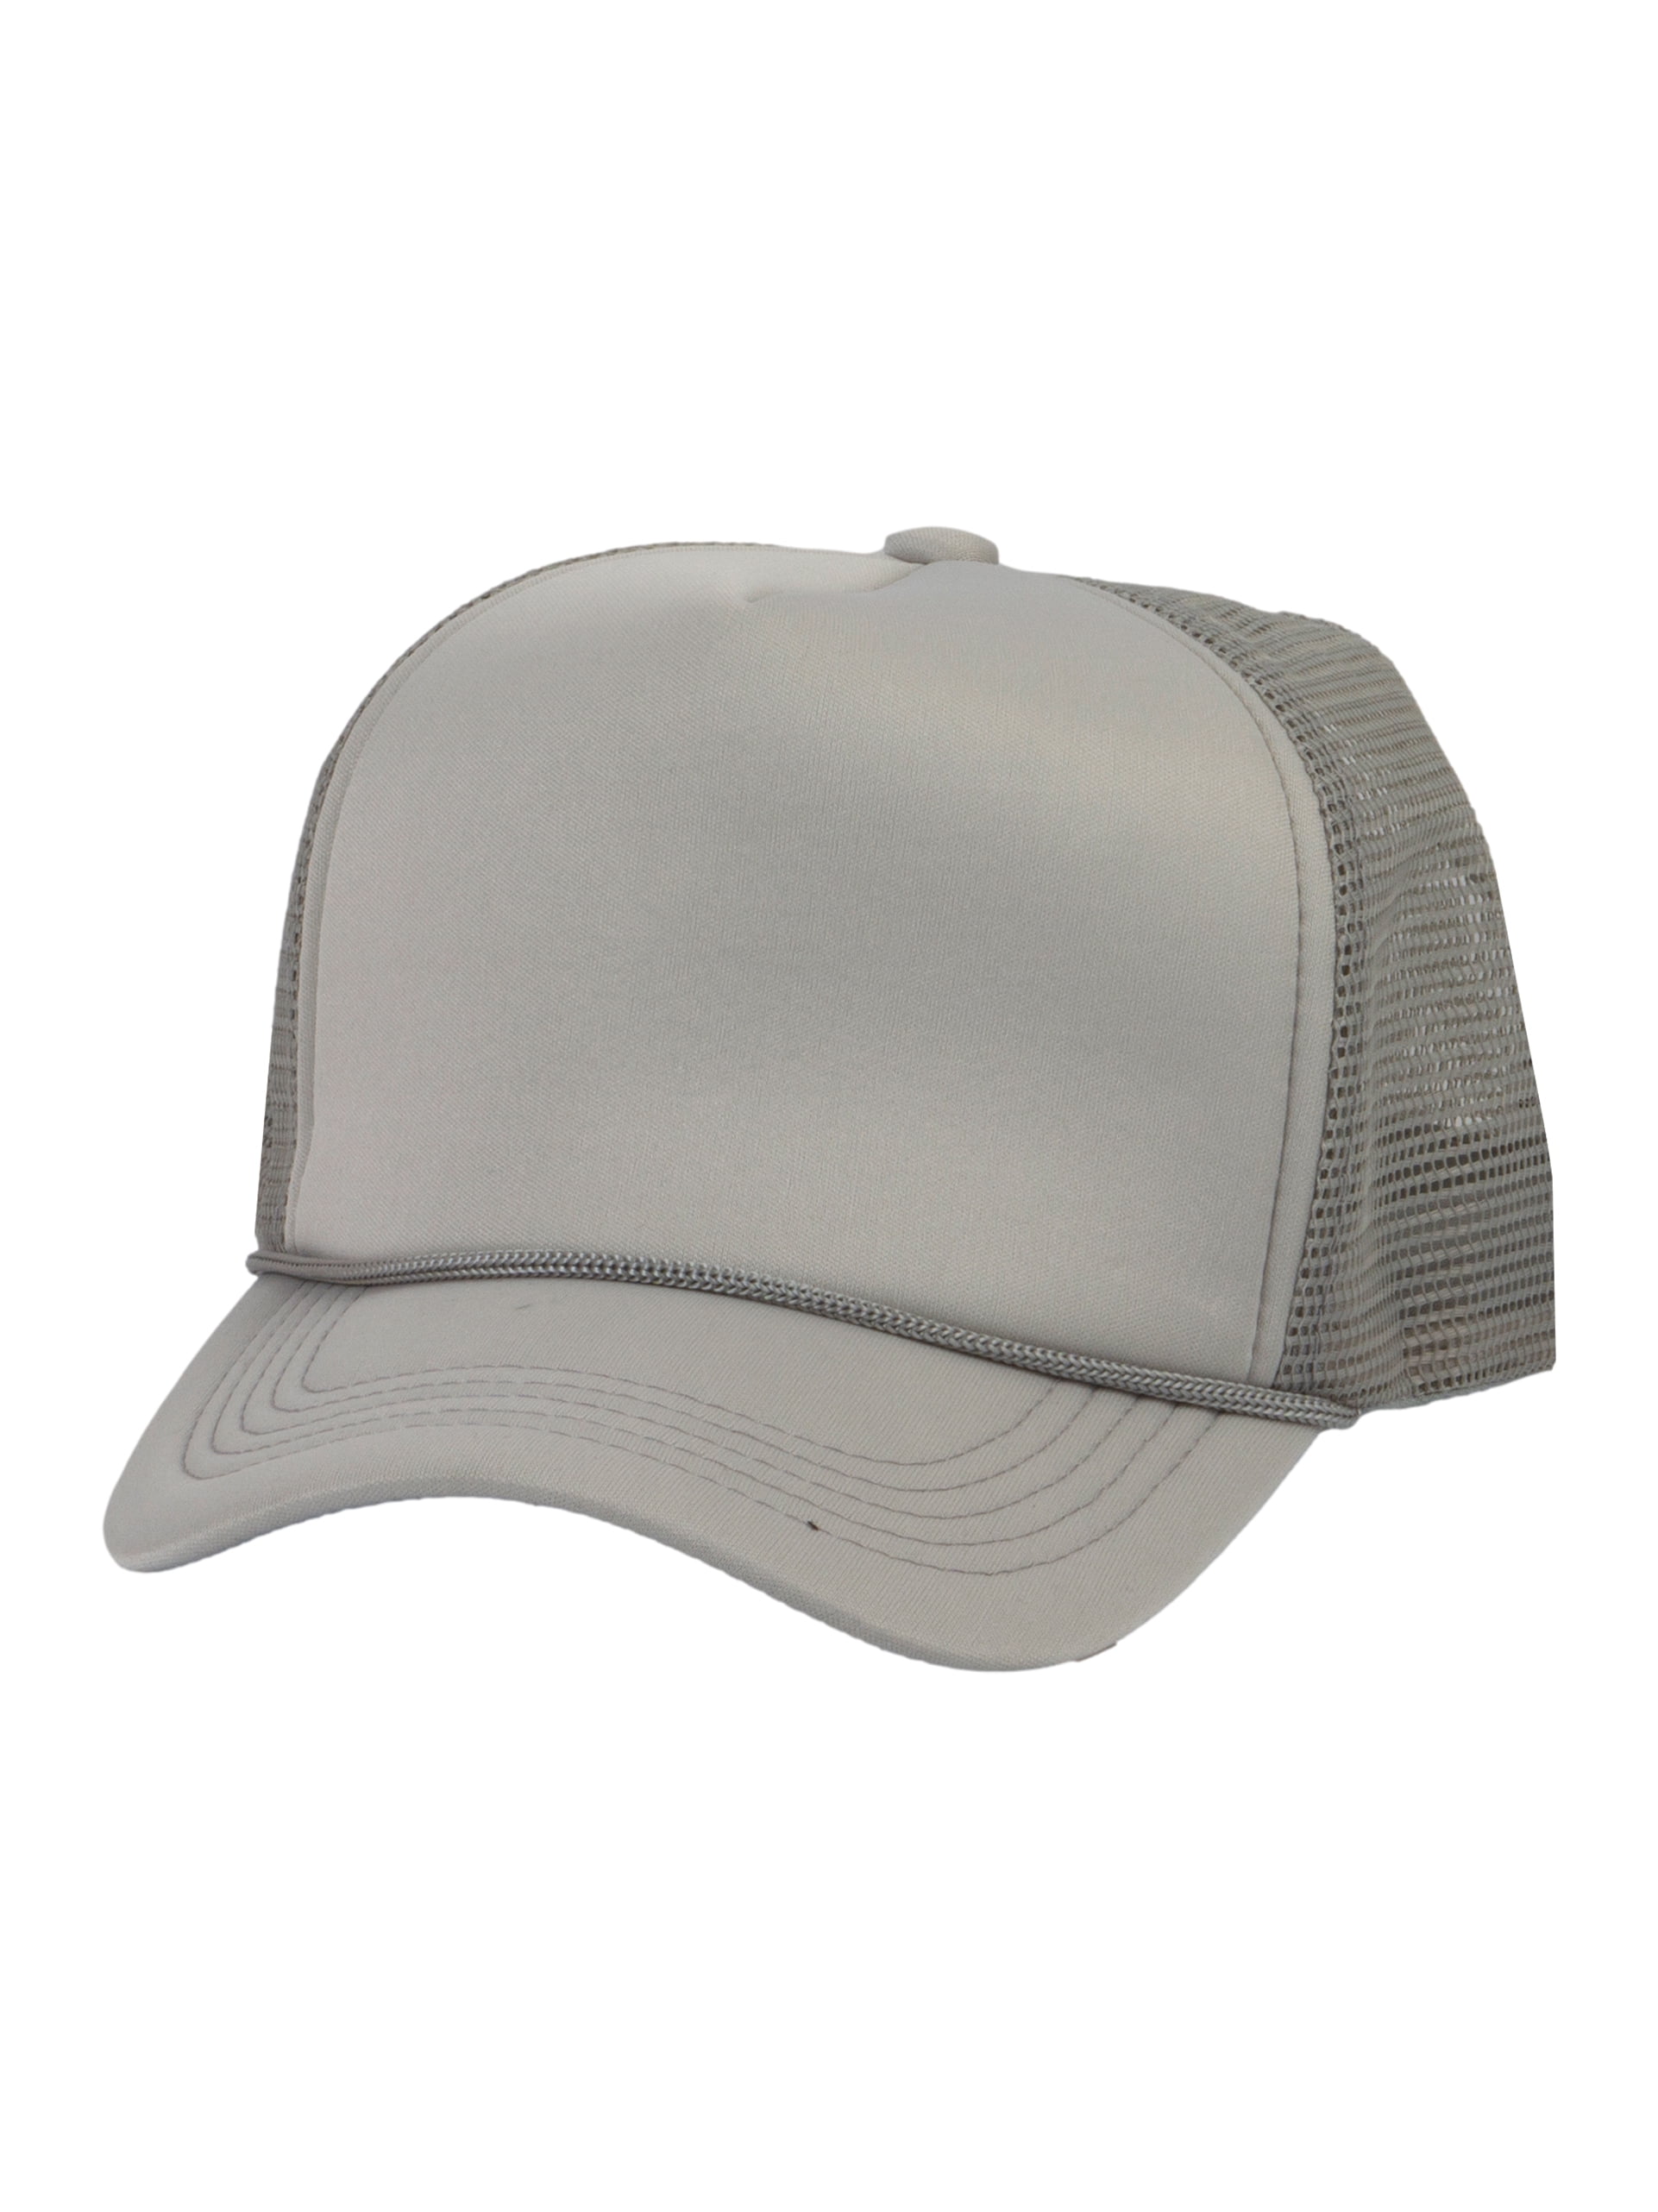 Top Headwear Blank Trucker Hat - Mens Trucker Hats Foam Mesh Snapback Light  Grey 